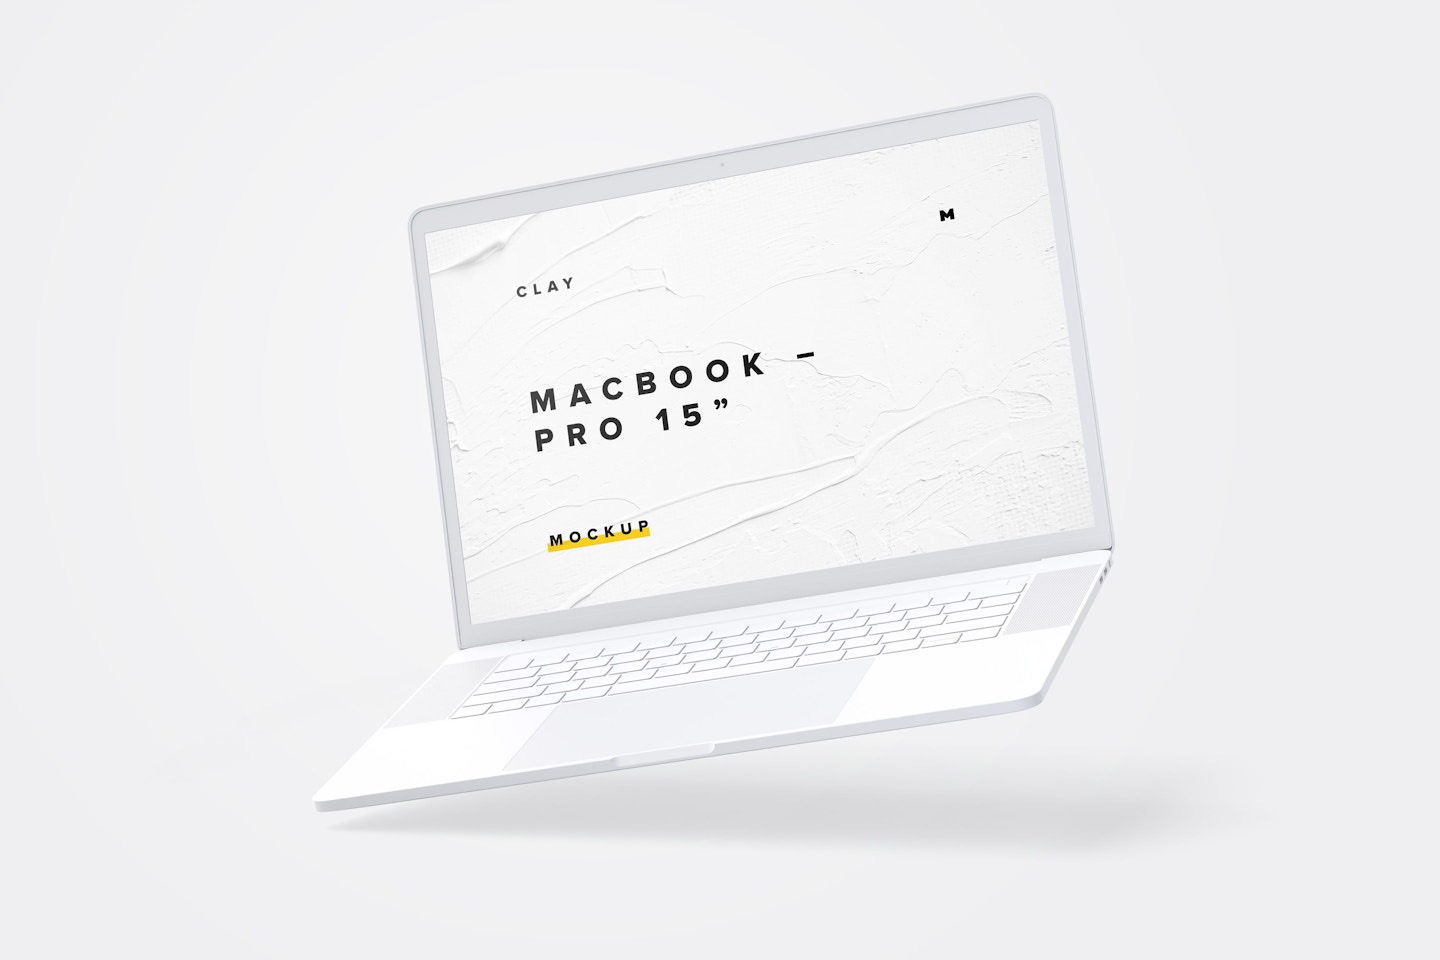 Maqueta de MacBook Pro de 15” con Touch Bar, Multicolor